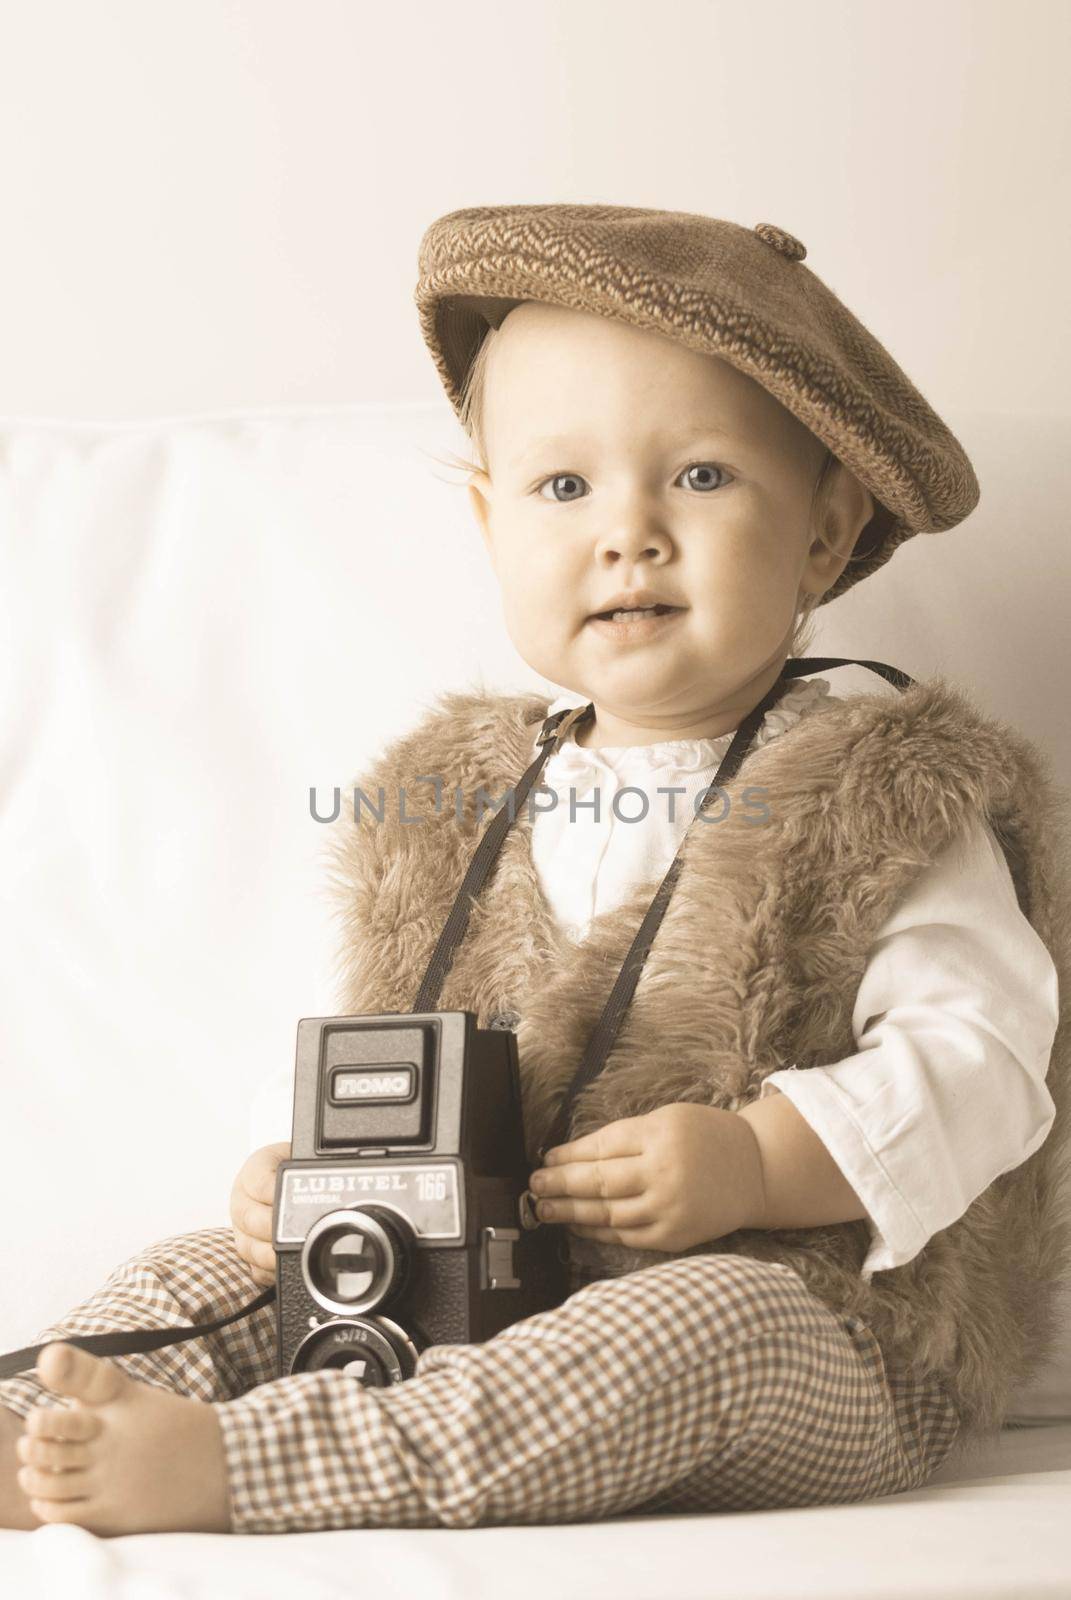 Cute baby with retro camera by maramorosz